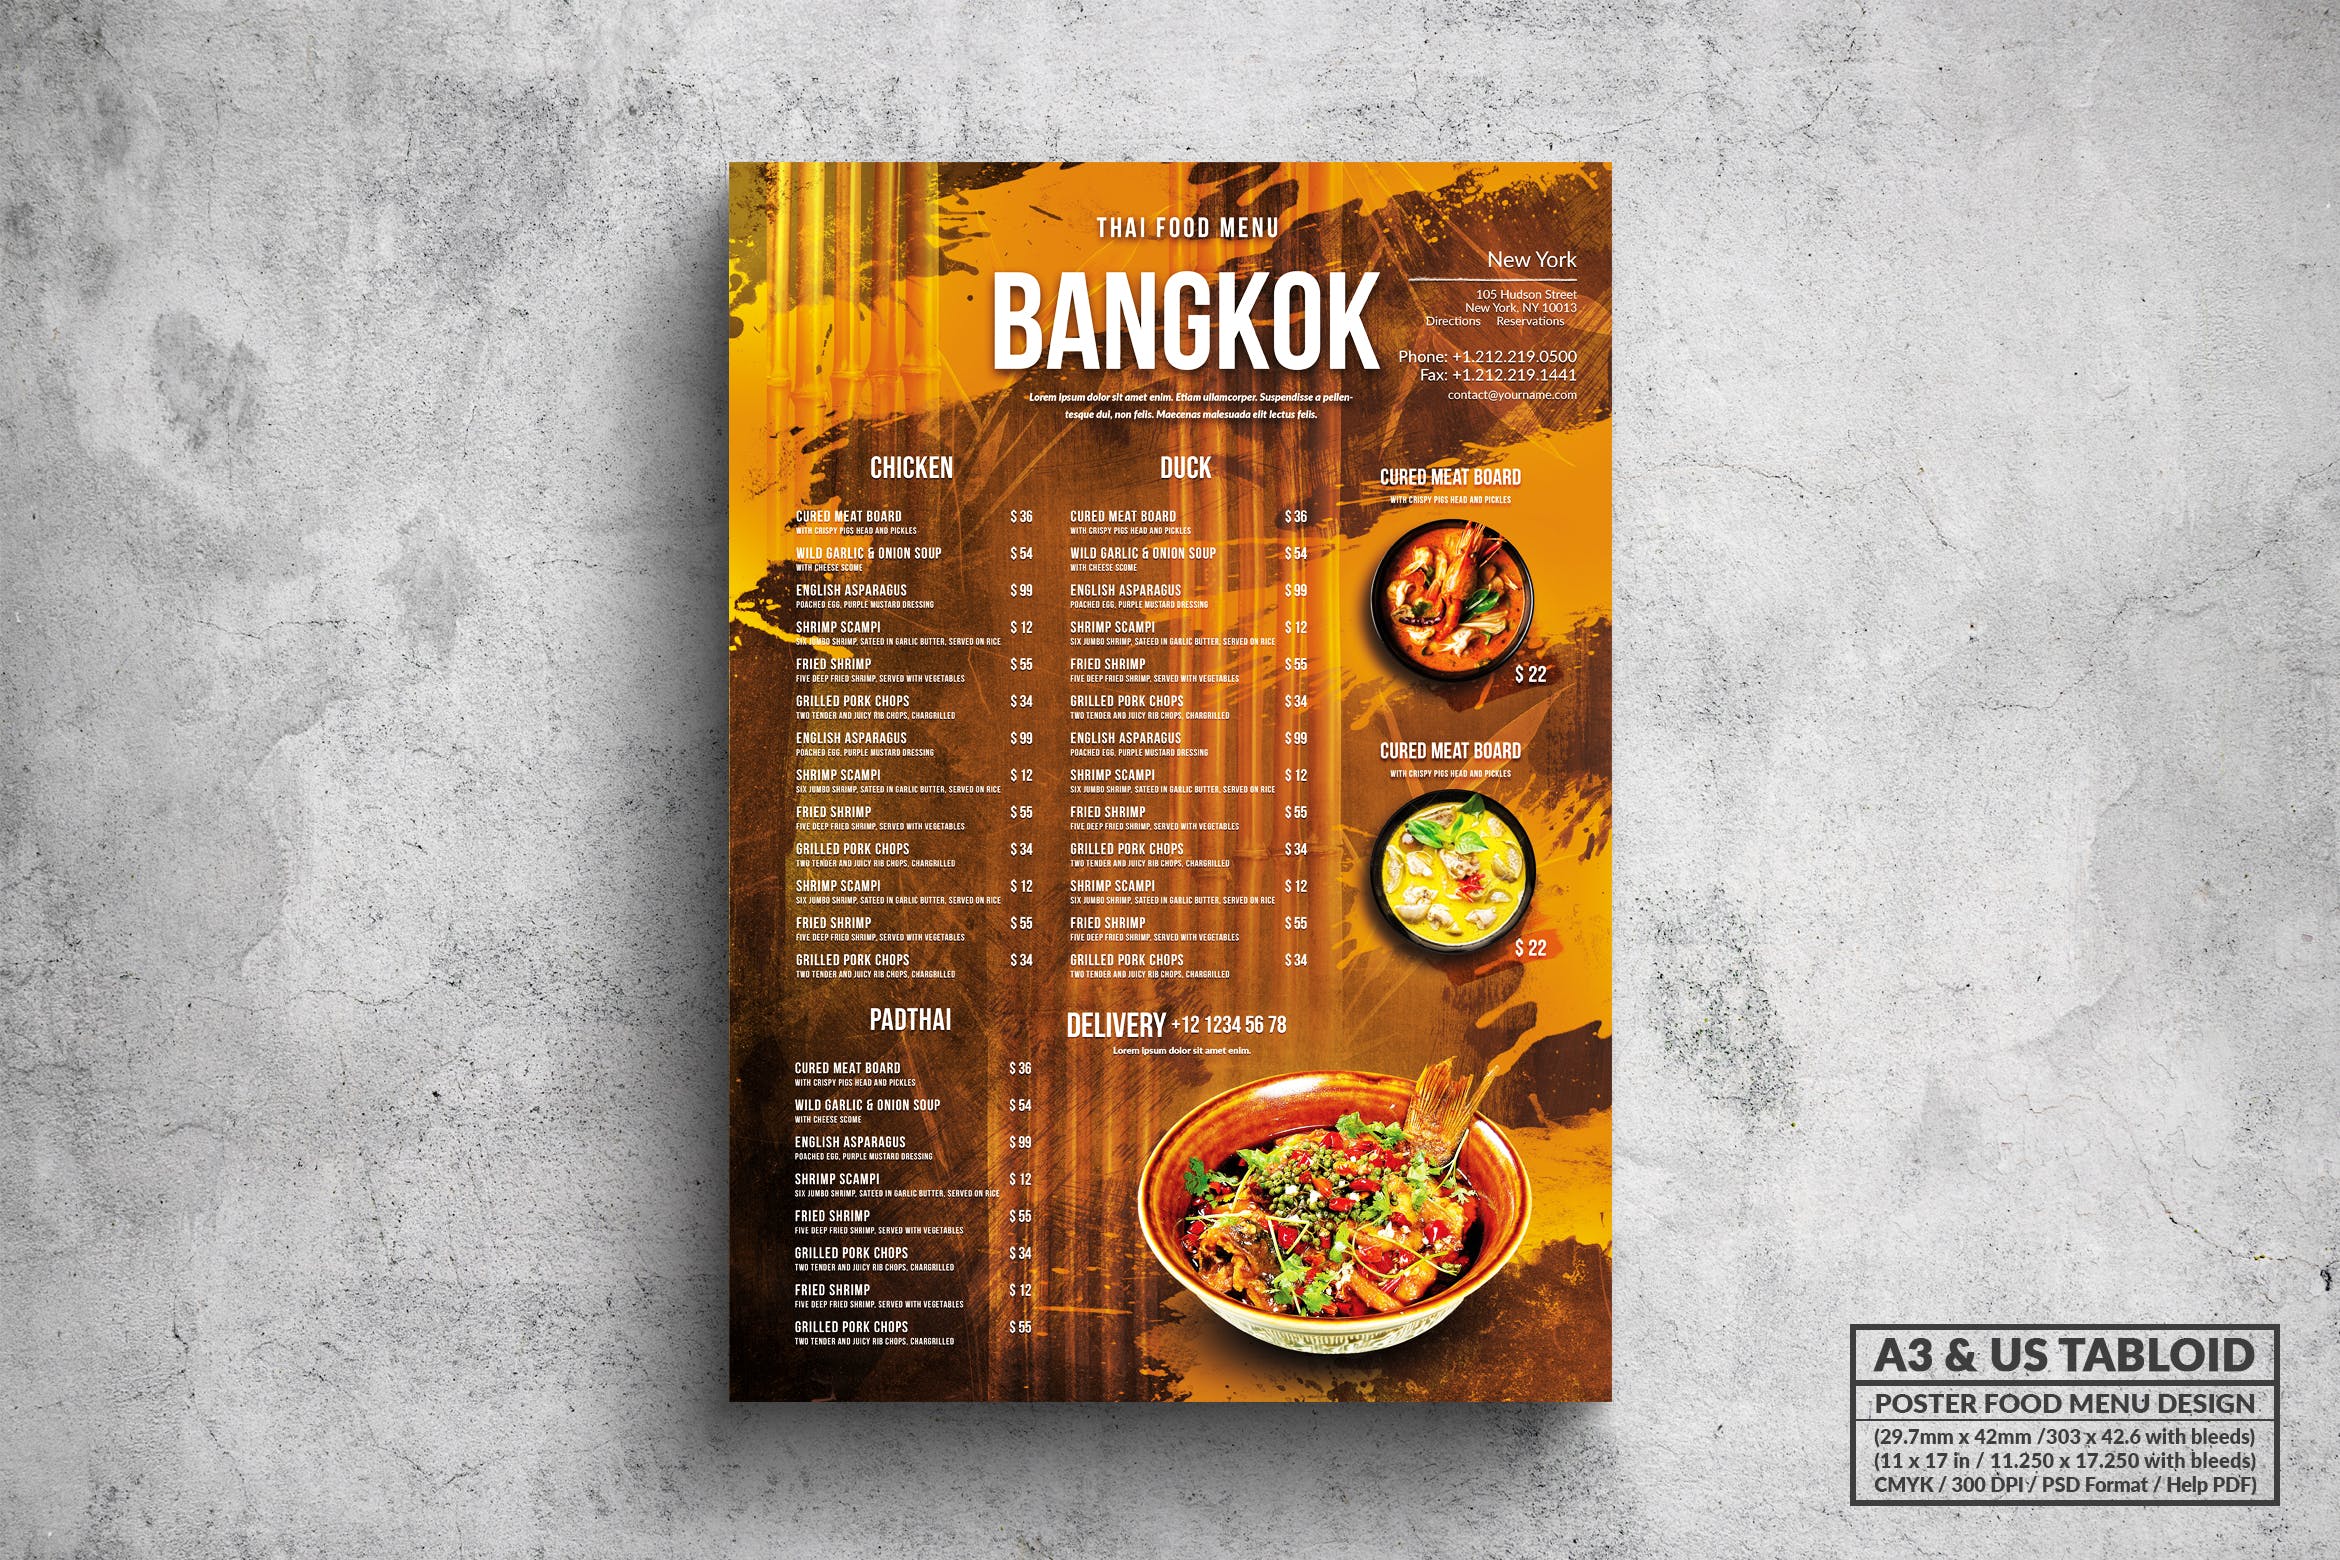 泰国菜餐厅菜单海报PSD素材16图库精选模板 Bangkok Thai Food Menu – A3 & US Tabloid Poster插图